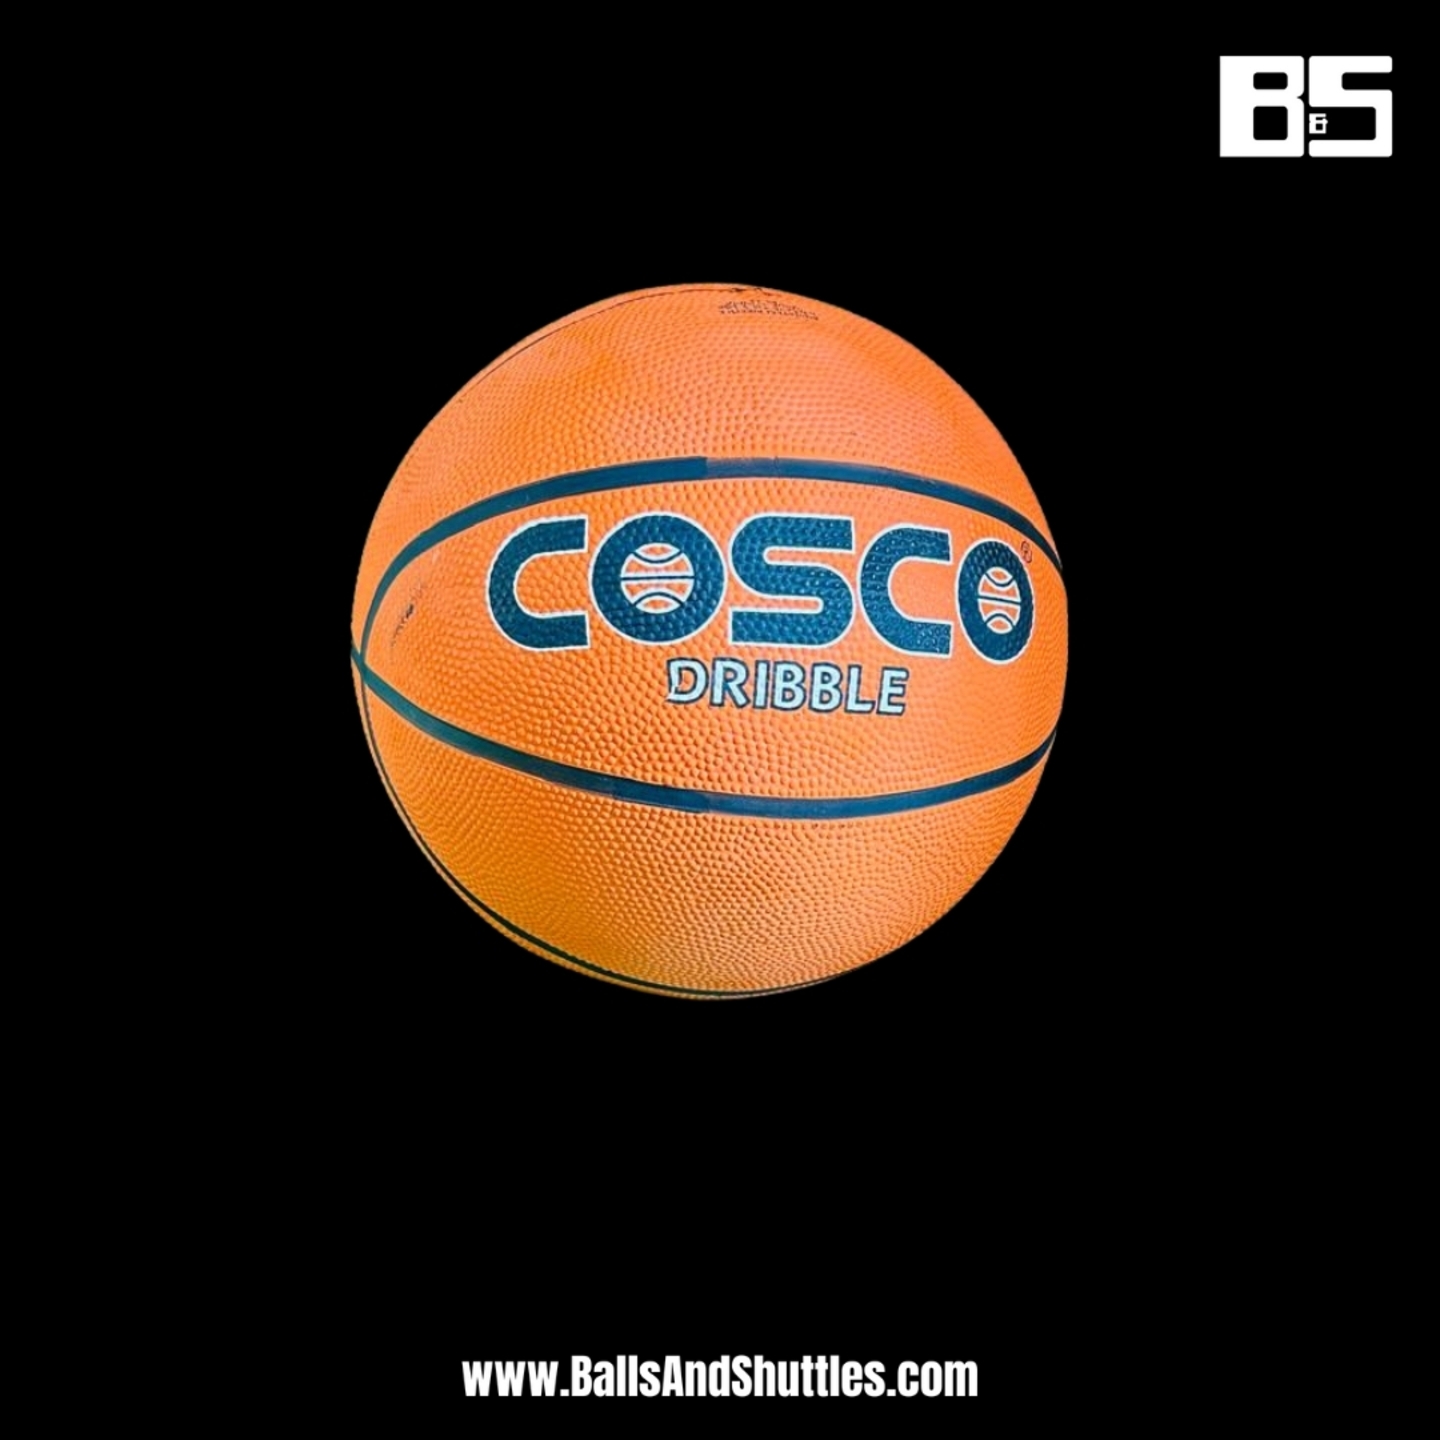 COSCO DRIBBLE BASKETBALL | COSCO SIZE 7 BASKETBALL | COSCO BASKETBALL